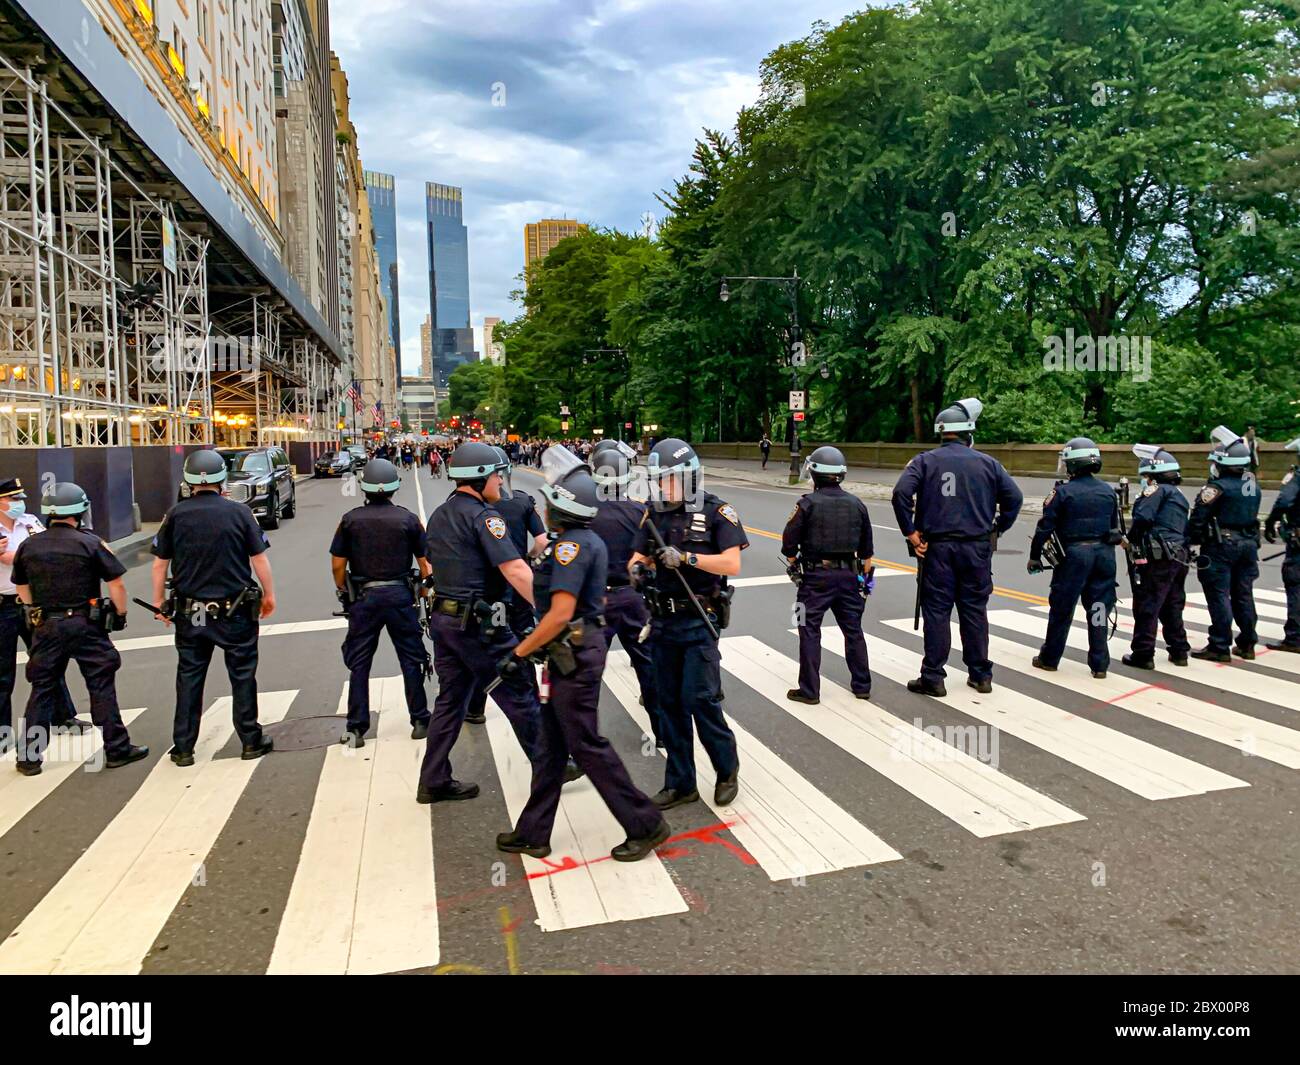 New York, New York, États-Unis. 3 juin 2020. (NOUVEAU) des manifestants ont été arrêtés pour avoir brisé le couvre-feu à New York. 3 juin 2020, New York, États-Unis : alors que les manifestants marchaient pacifiquement le long de la 59ème rue avec la 5ème avenue sur Central Park, ils ont été confrontés et arrêtés par les policiers du NYPD pour avoir brisé le couvre-feu imposé par le maire de New York, Bill de Blasio. Le couvre-feu commence à 20h jusqu'à 5h du matin pour contenir les protestations qui ont résulté en la destruction et le pillage dans toute la ville. Crédit : Niyi Fote /Thenews2 crédit : Niyi Fote/TheNEWS2/ZUMA Wire/Alay Live News Banque D'Images